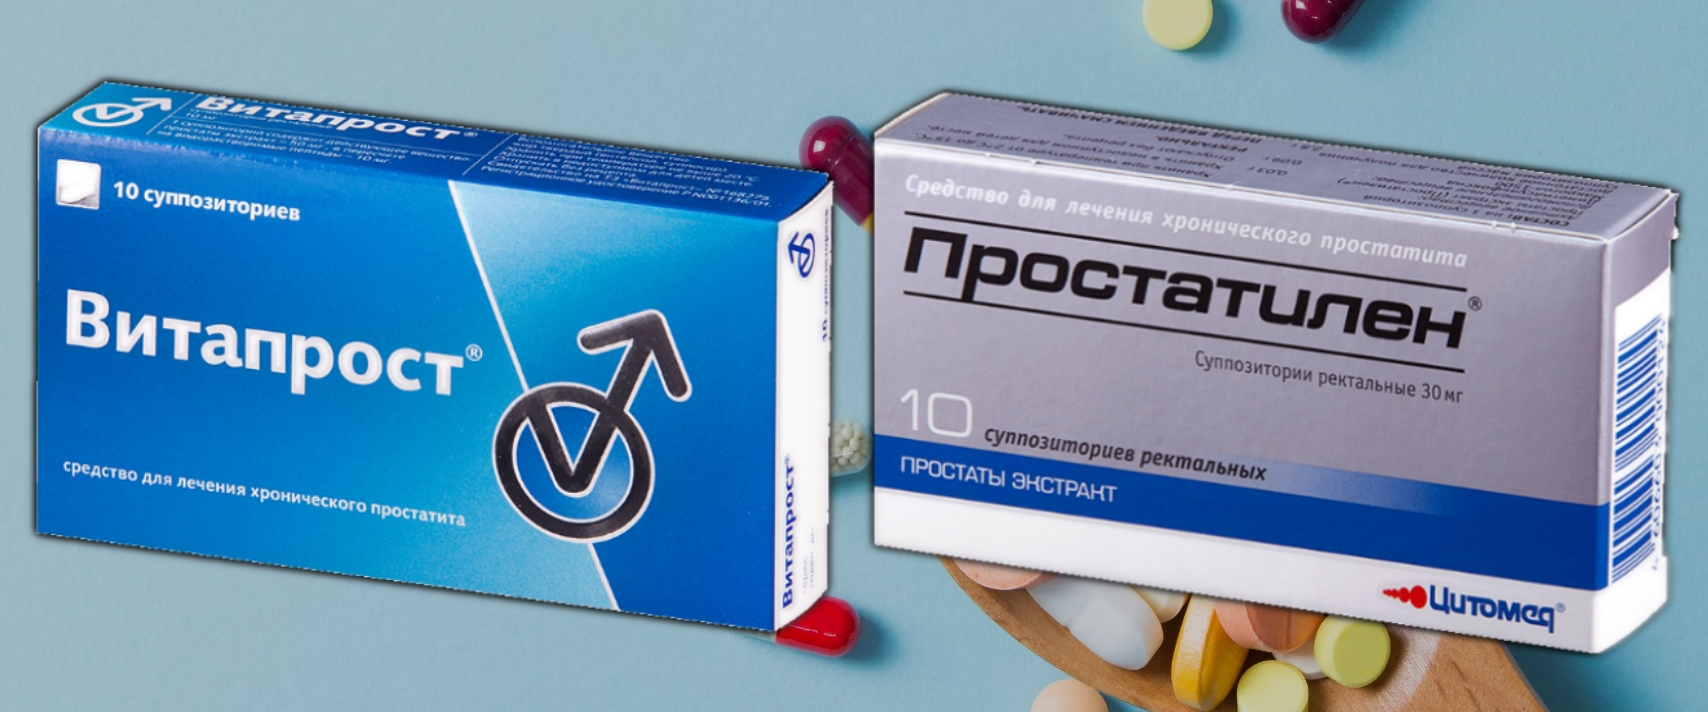 Недорогие лекарства от простатита